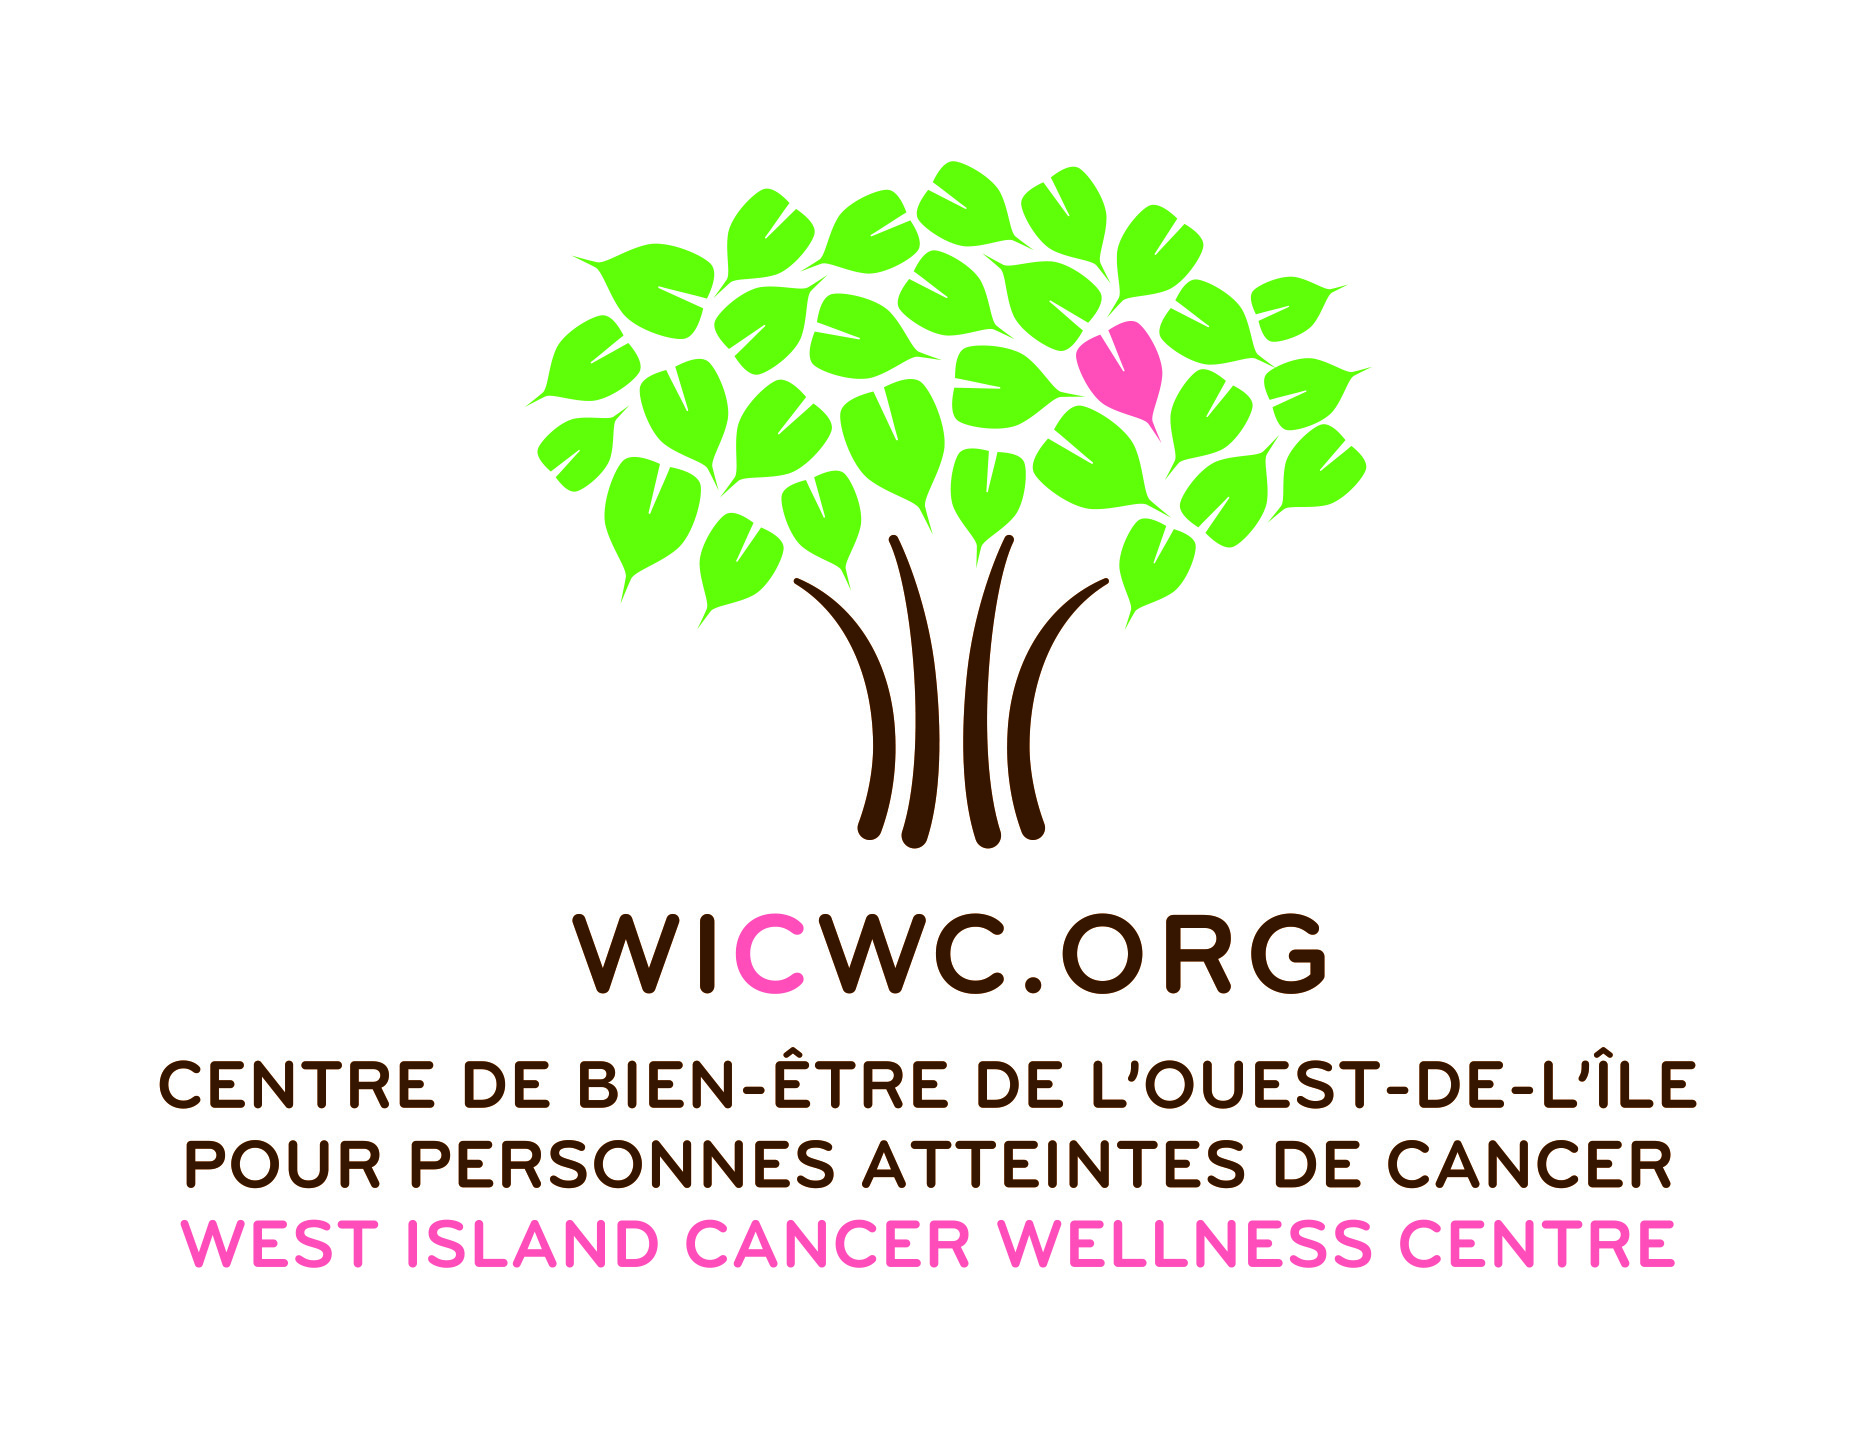 Le Centre de bien-être de l'Ouest-de-l'Île pour personnes atteintes de cancer / West Island Cancer Wellness Center